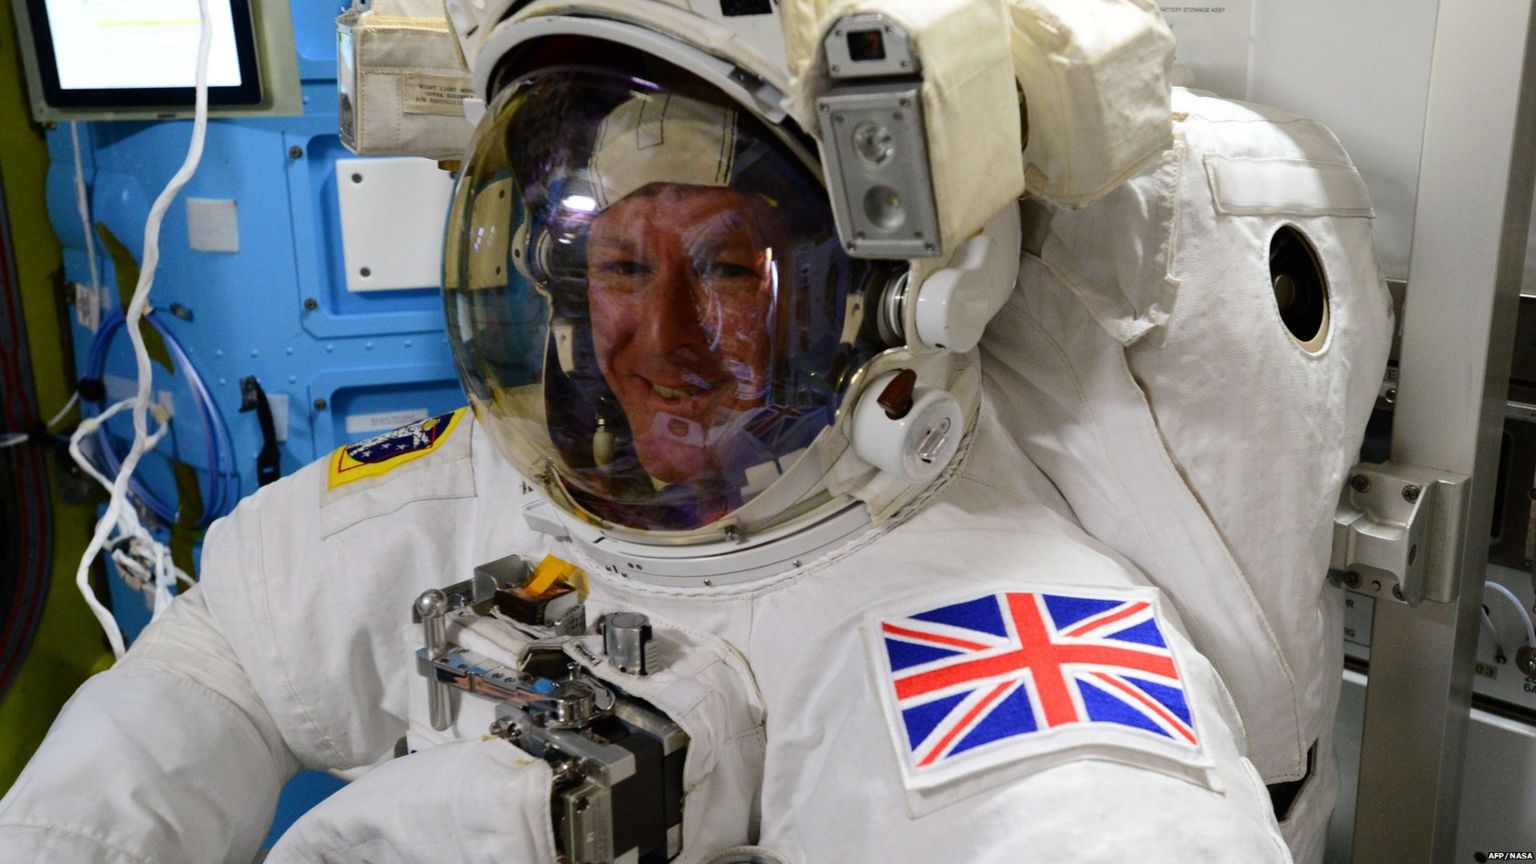 Tim Peake in space suit